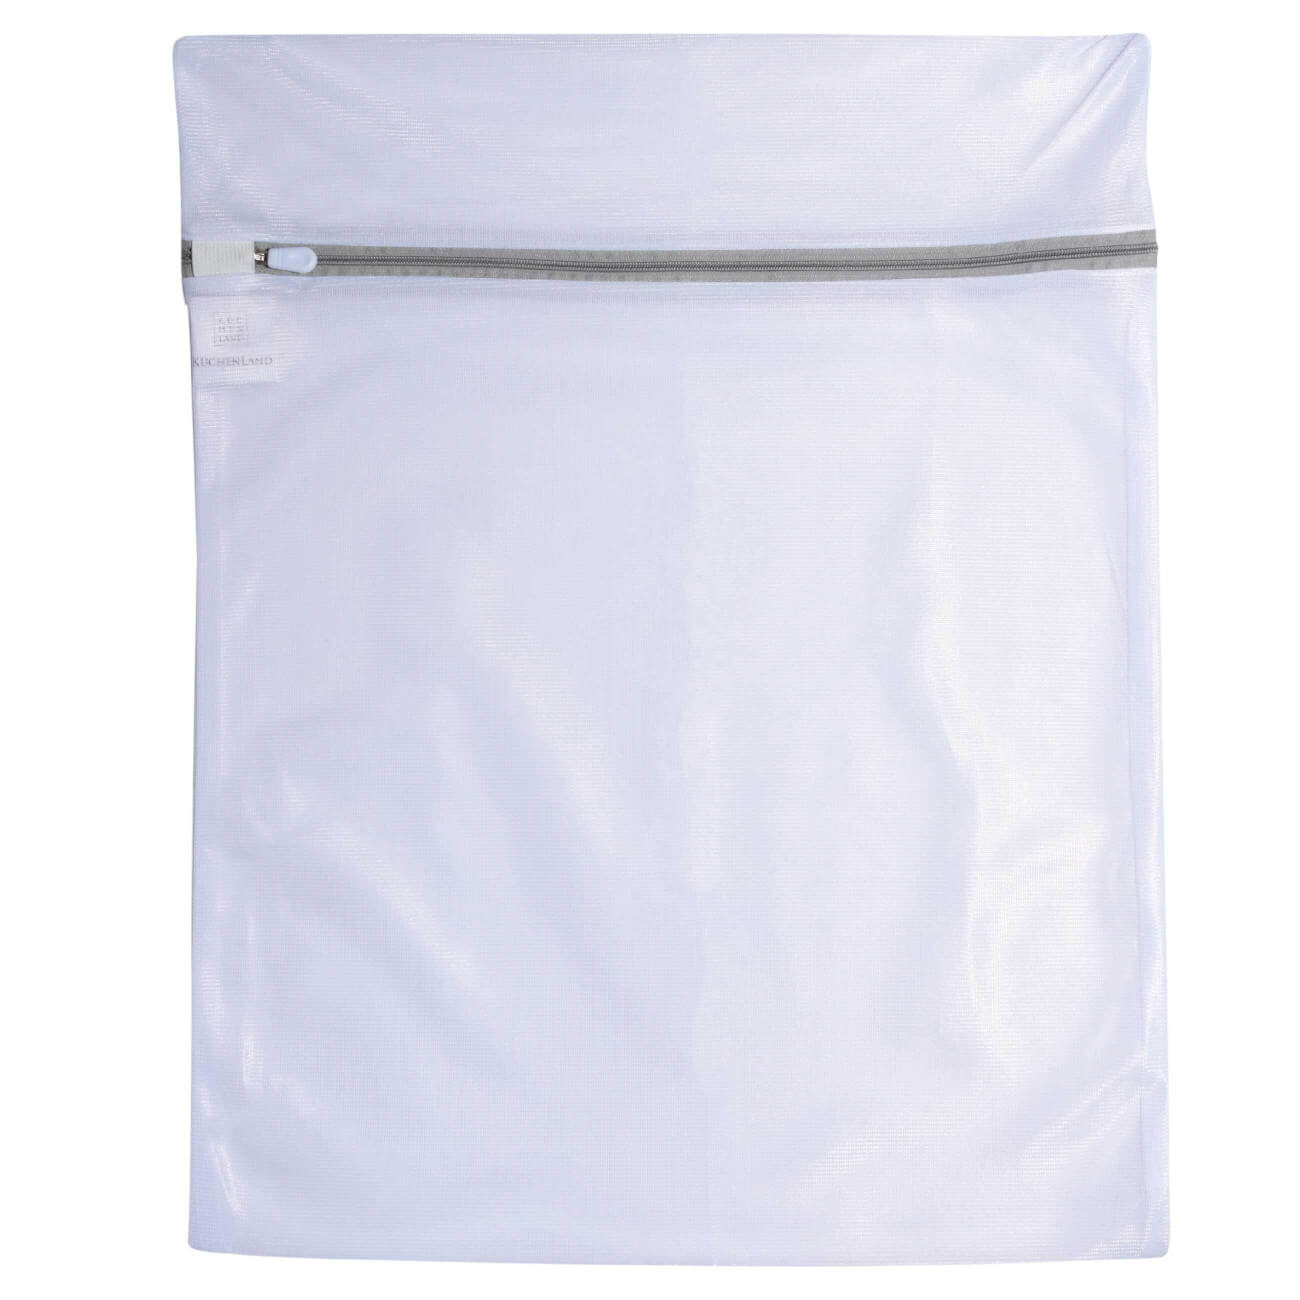 Мешок для стирки одежды, 40х50 см, полиэстер, бело-серый, Safety plus мешок для стирки бюстгалтеров 15 см с защитой полиэстер safety